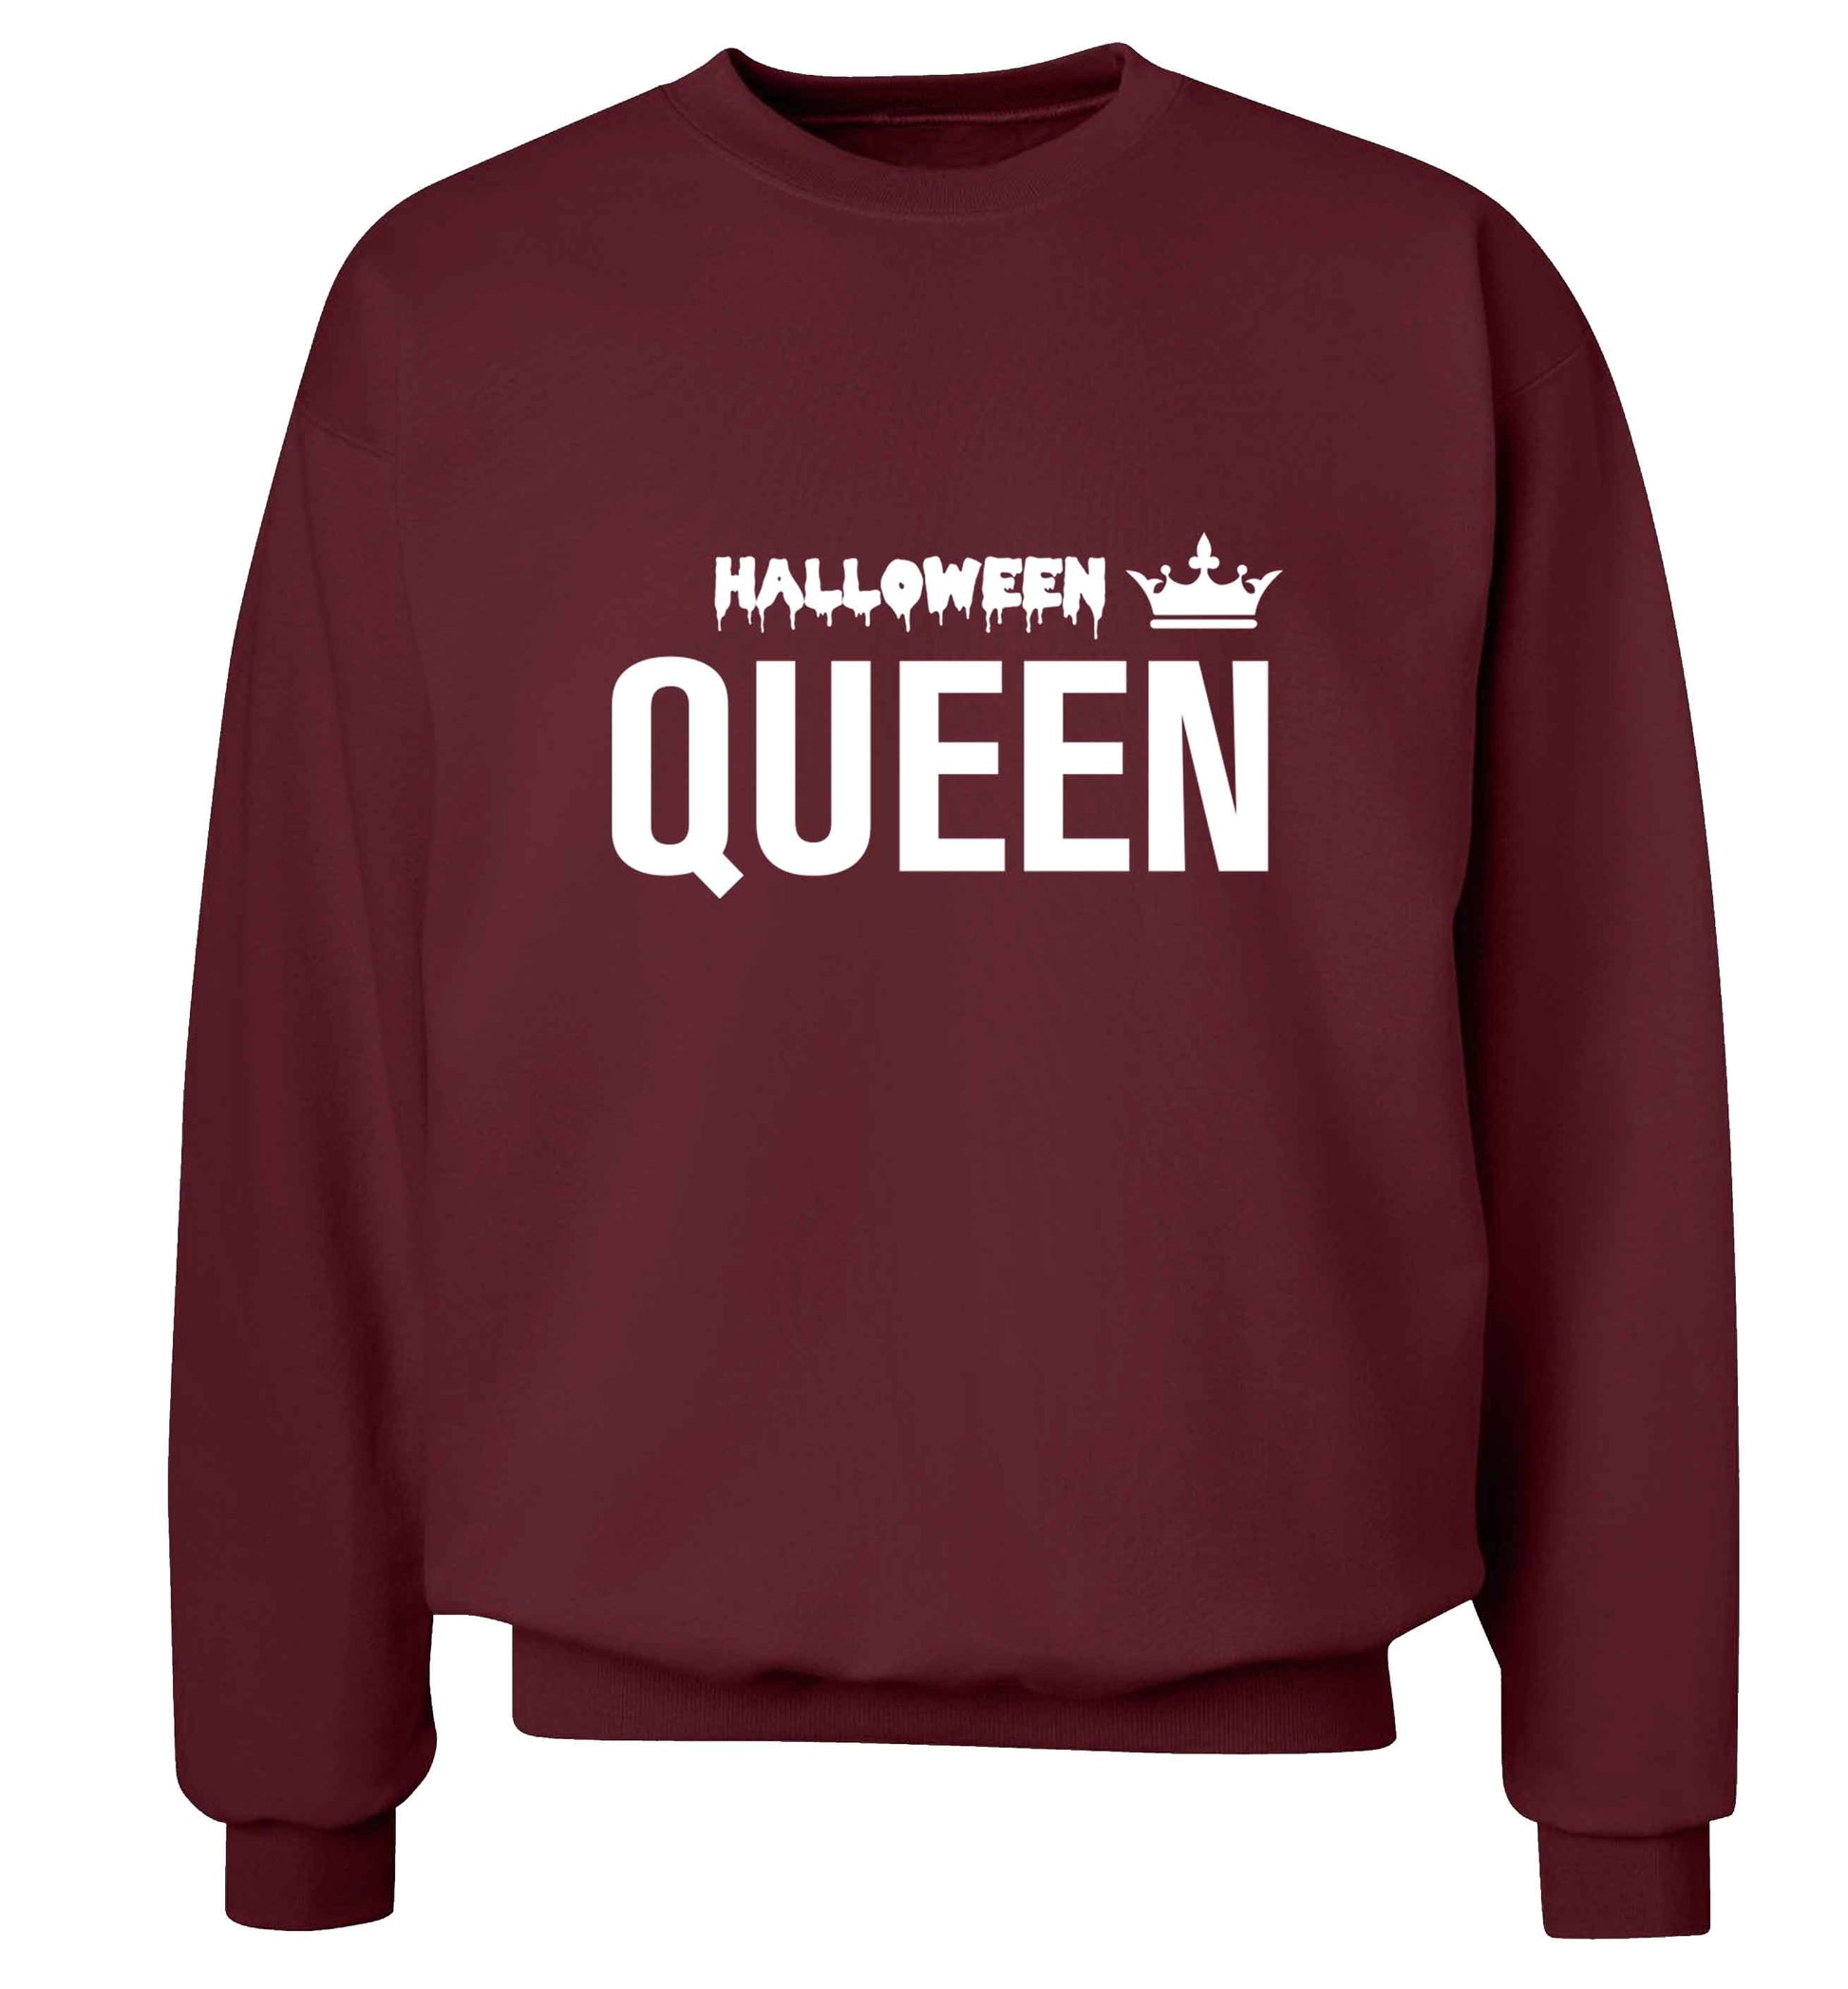 Halloween queen adult's unisex maroon sweater 2XL